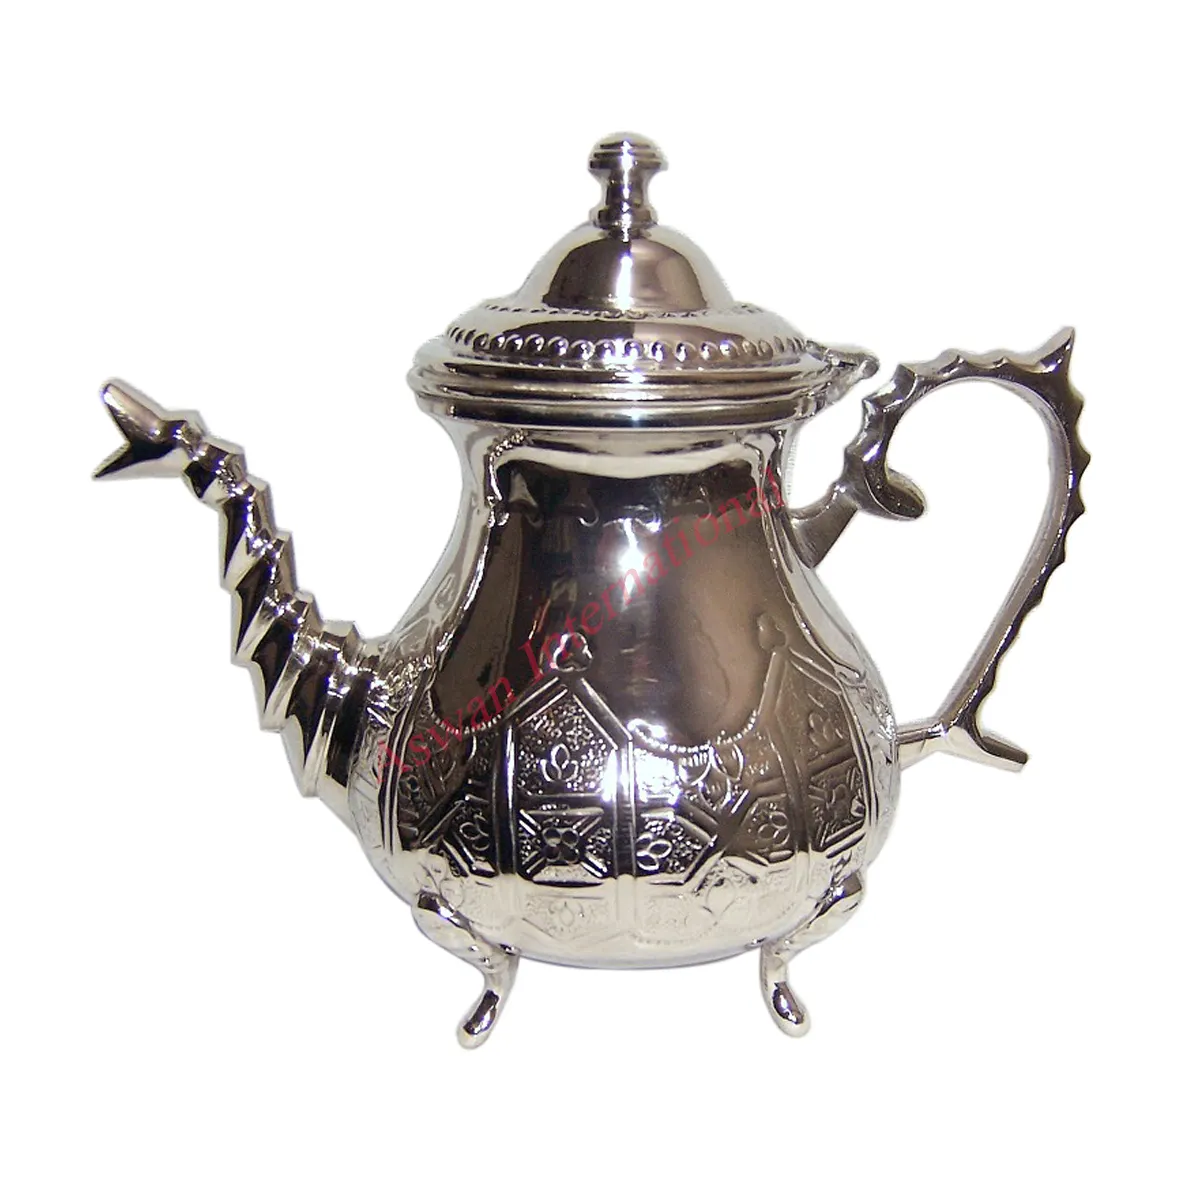 الشاي الملكي 1.0 Qt. الفولاذ المقاوم للصدأ براد شاي مع إزالة المساعد على التحلل سلة و للطي مقبض في النحاس اللون